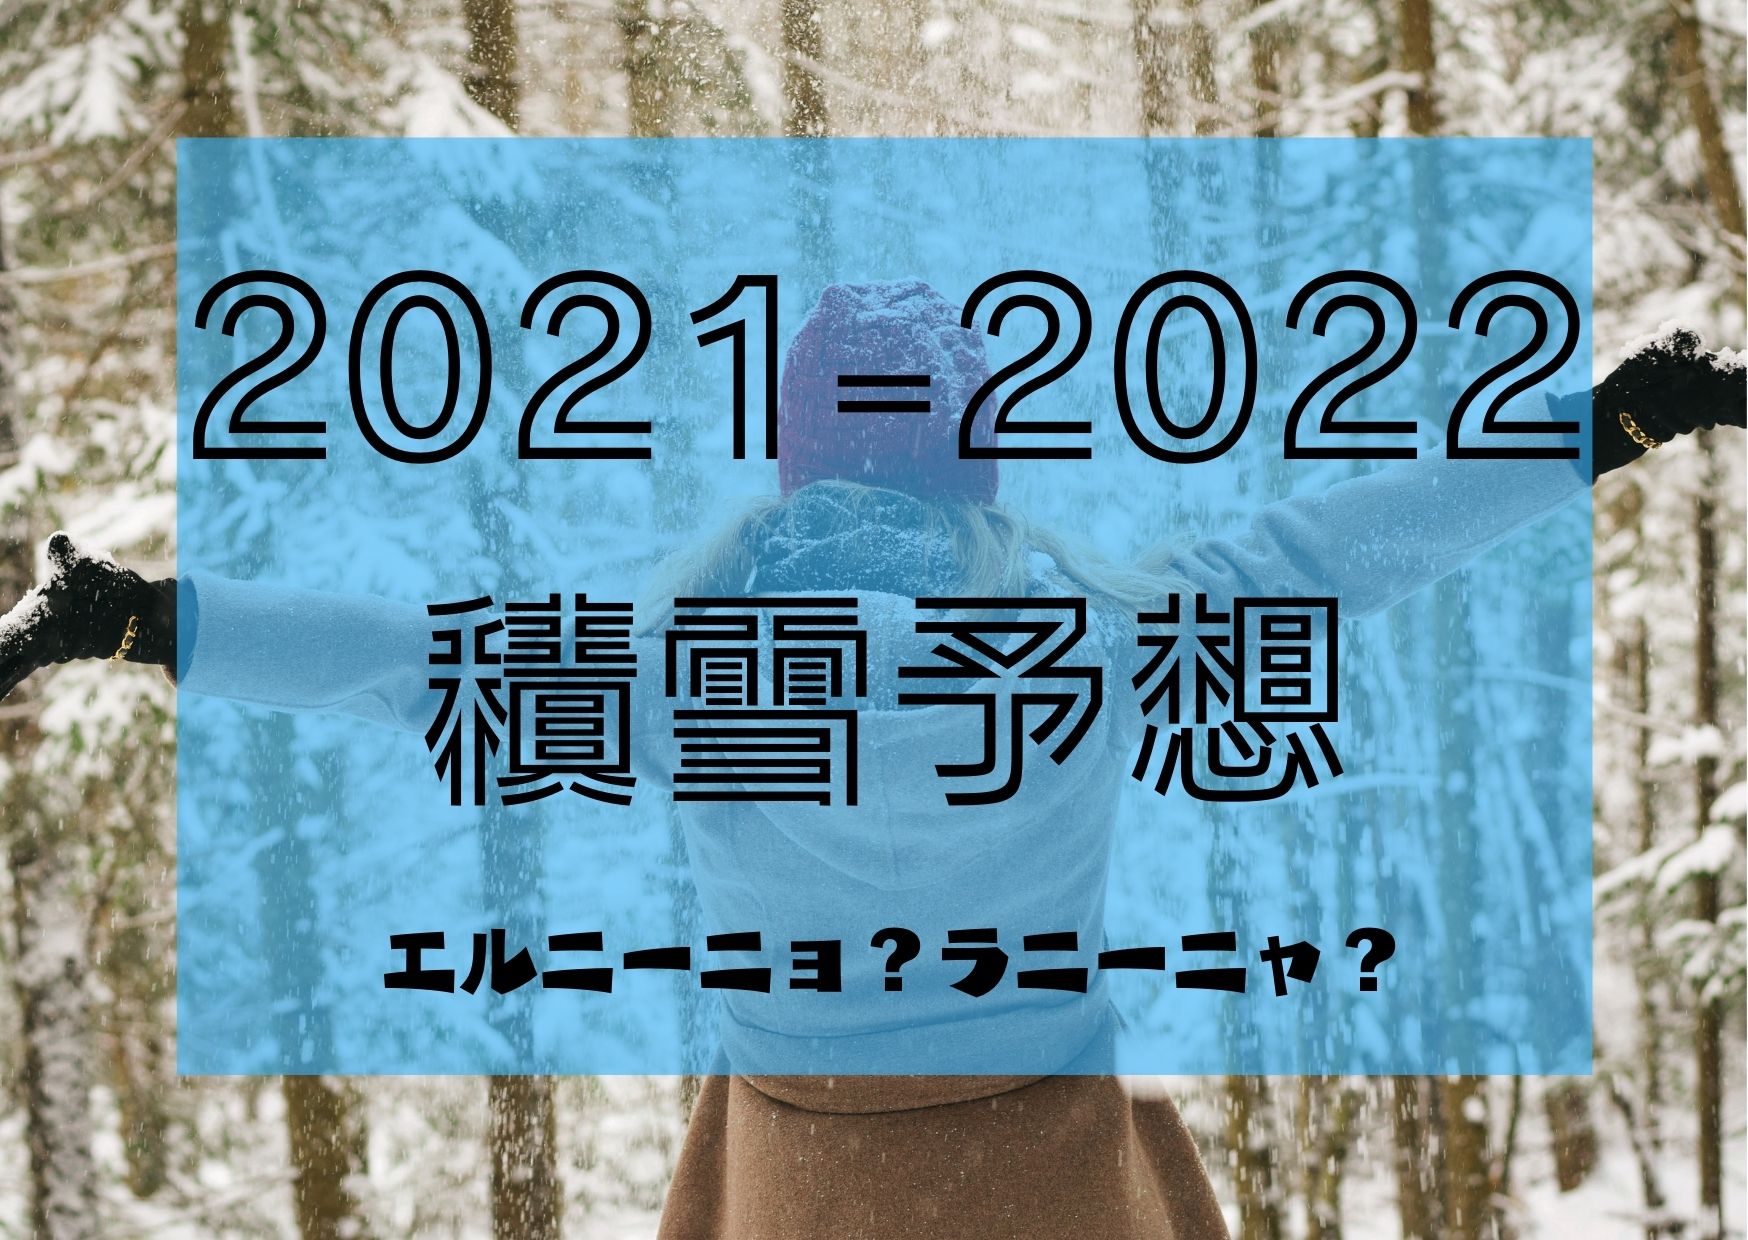 2021-2022 積雪予想 (1)